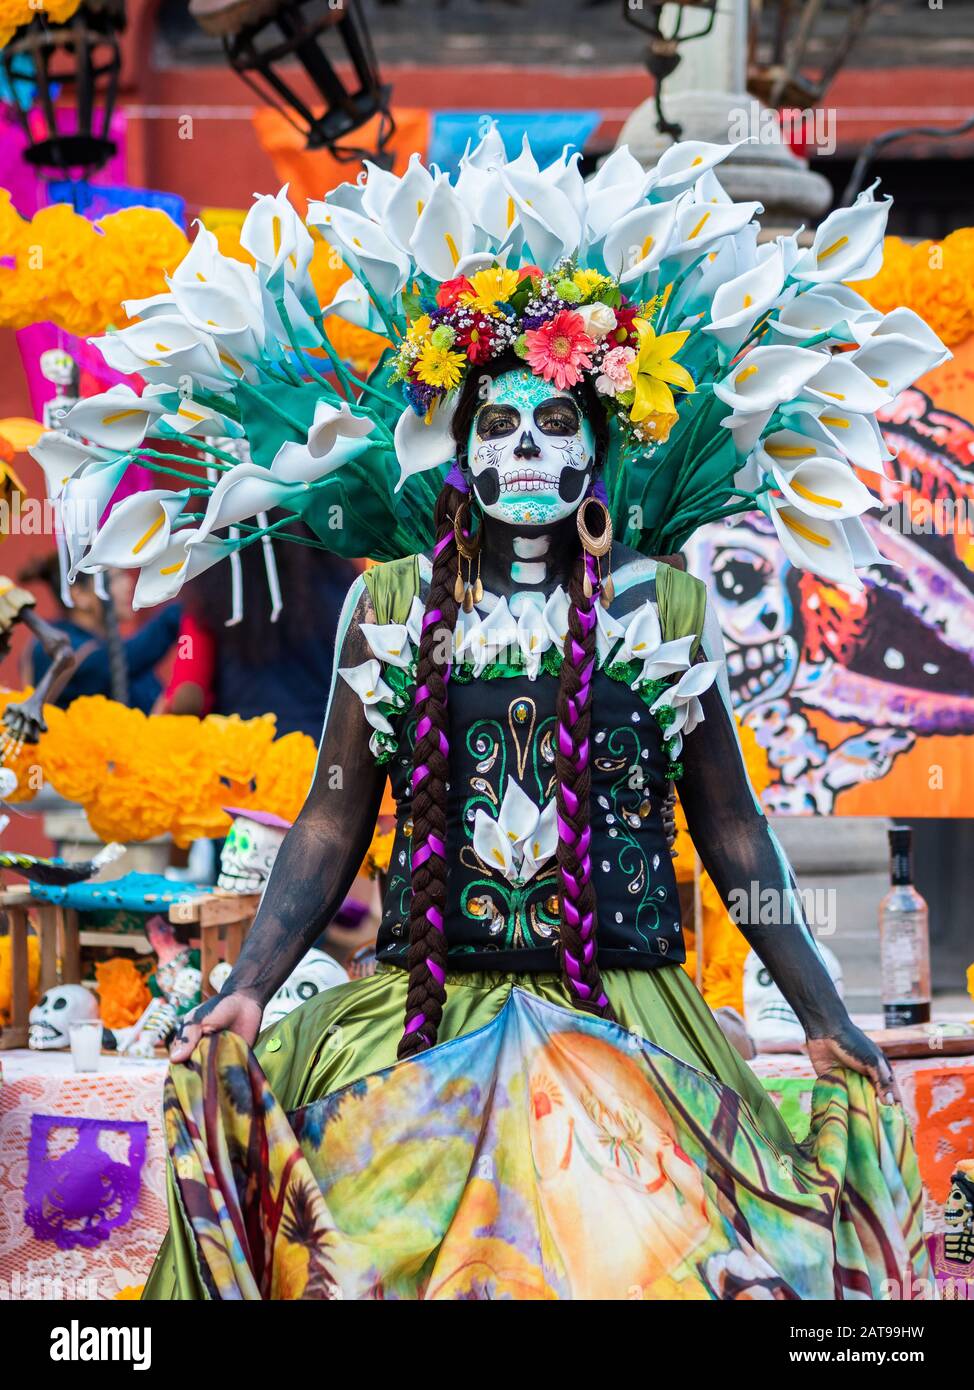 Ritratto di una donna con bellissimi costumi a tema giorno dei morti e trucco cranio per le strade di Guanajuato, Messico. Foto Stock